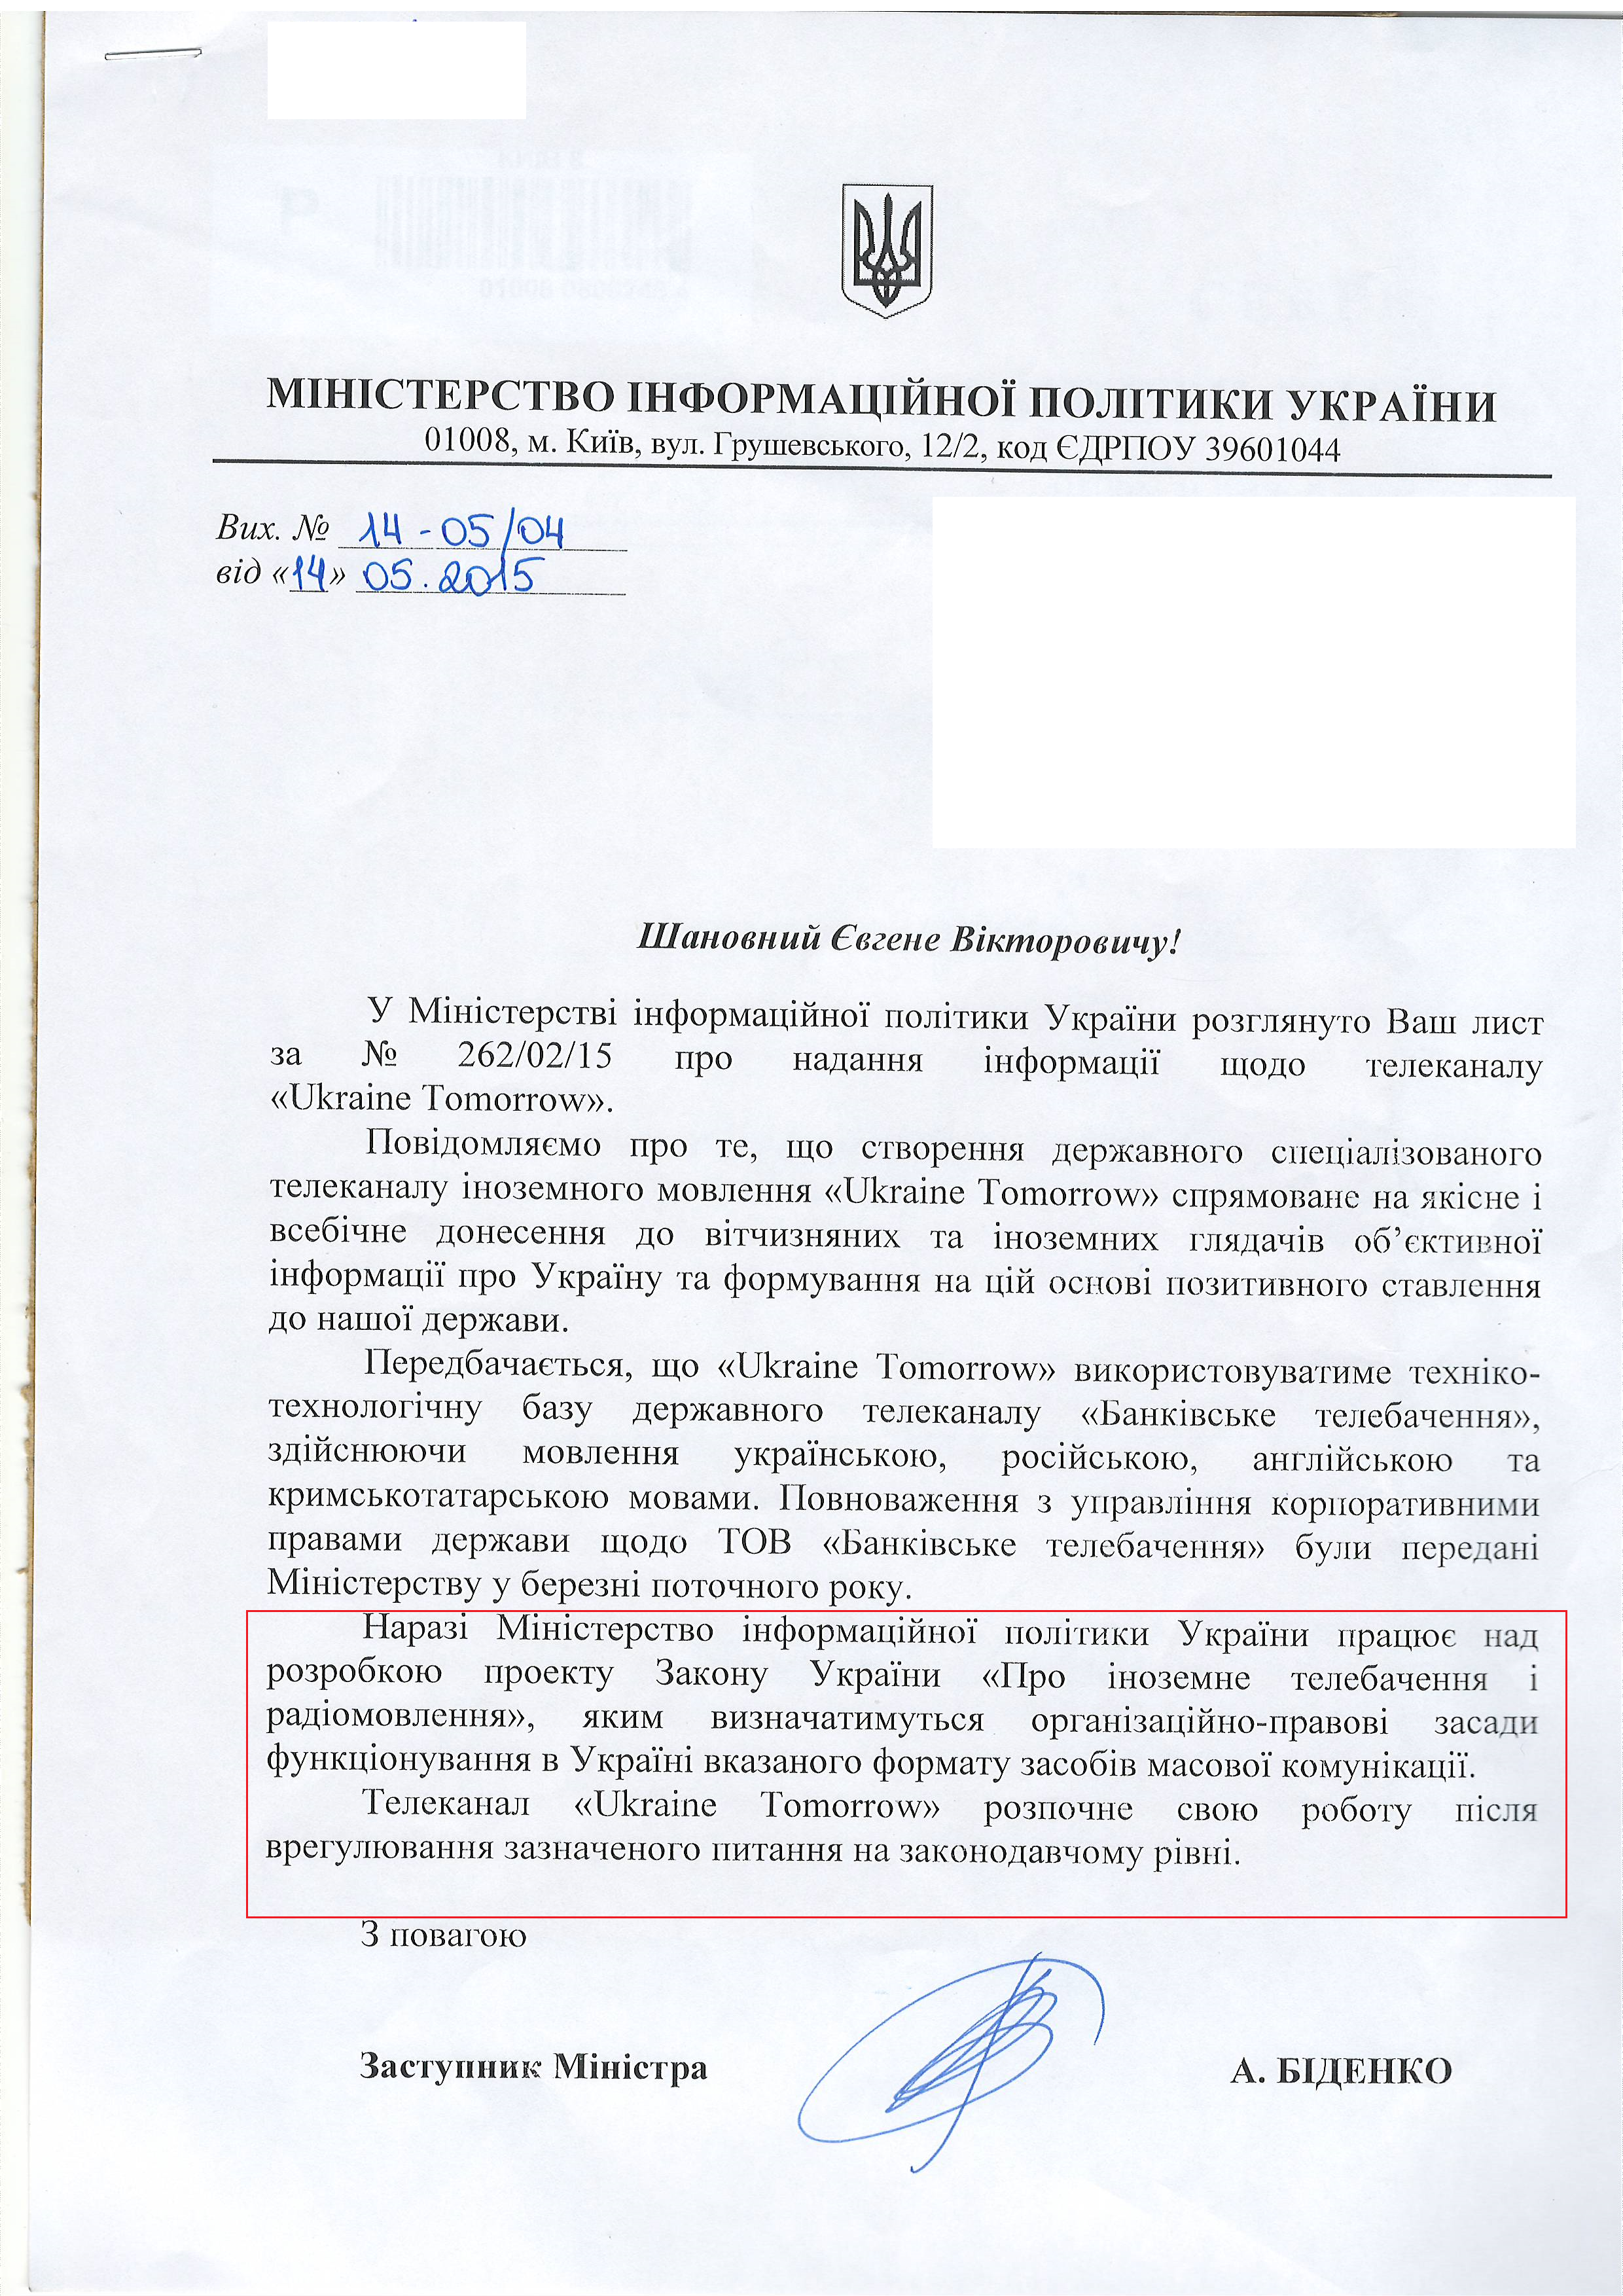 лист міністерства інформаційної політики від 14 травня 2015 року